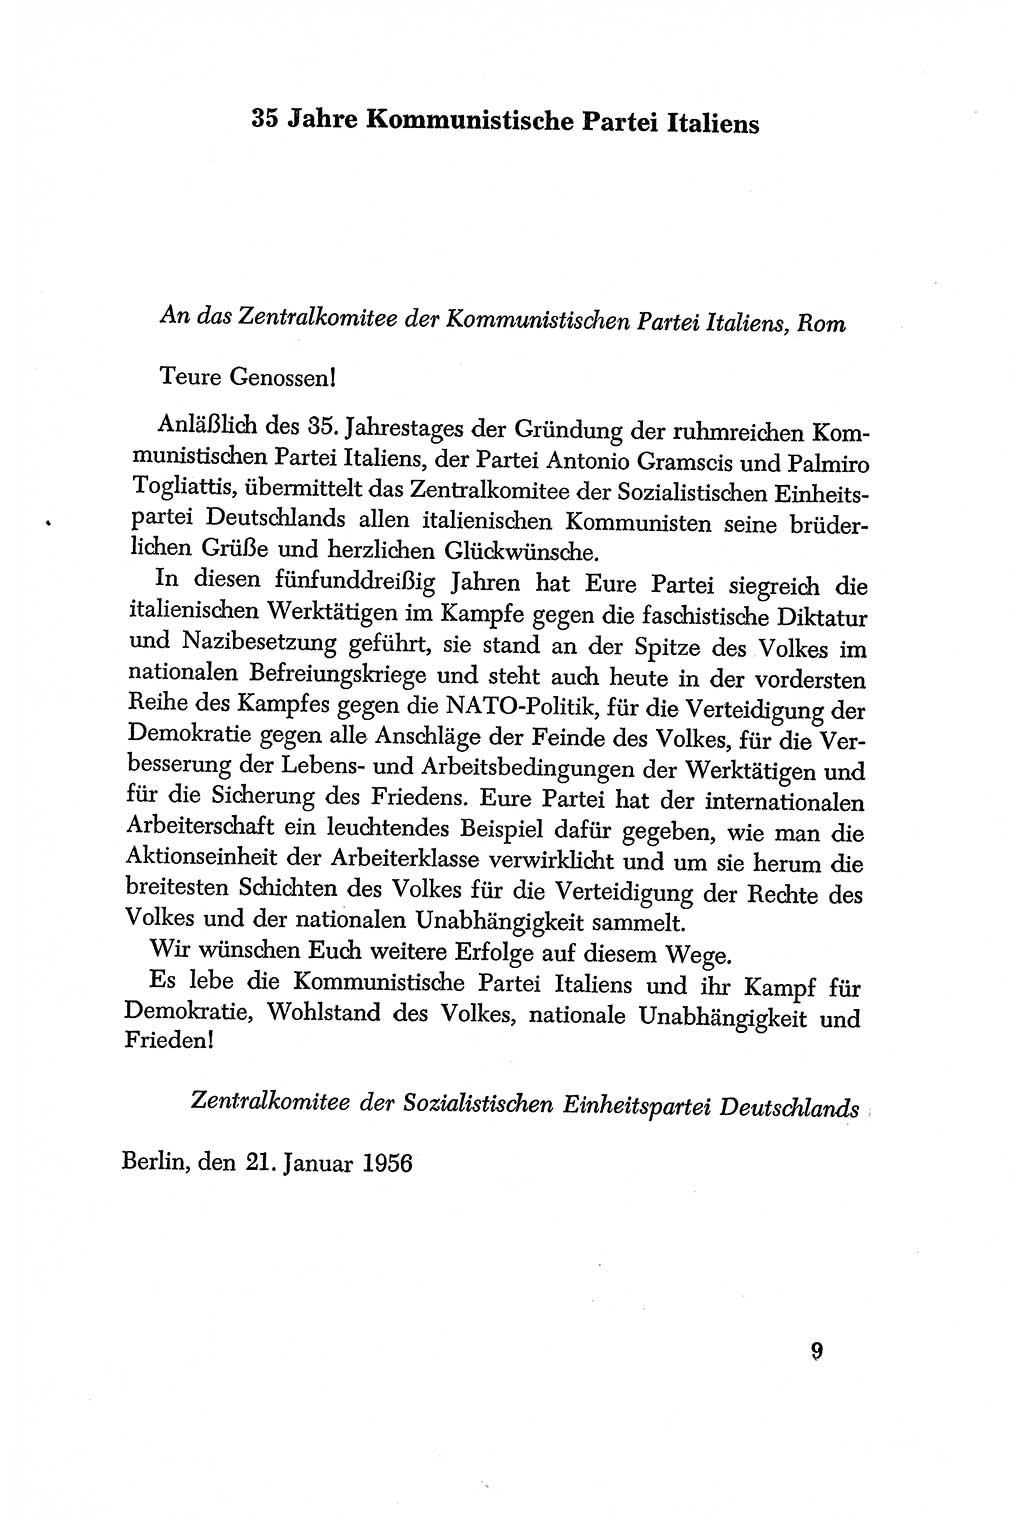 Dokumente der Sozialistischen Einheitspartei Deutschlands (SED) [Deutsche Demokratische Republik (DDR)] 1956-1957, Seite 9 (Dok. SED DDR 1956-1957, S. 9)